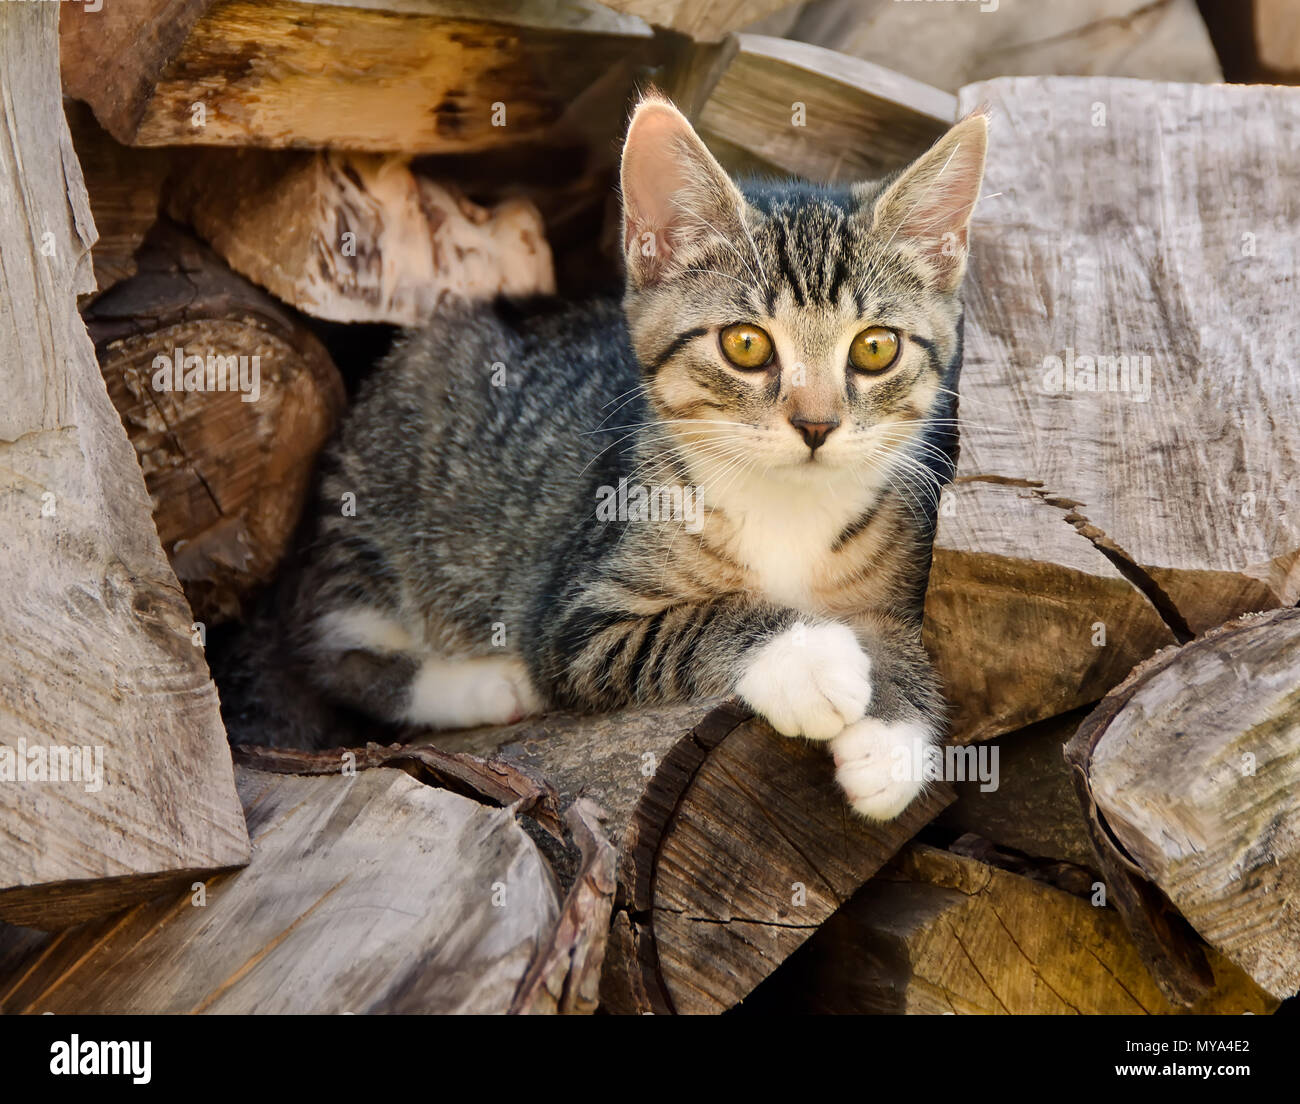 Carino giovane tabby kitten in appoggio su una pila di registri e utilizza la pila di legno come un posto di osservazione Foto Stock